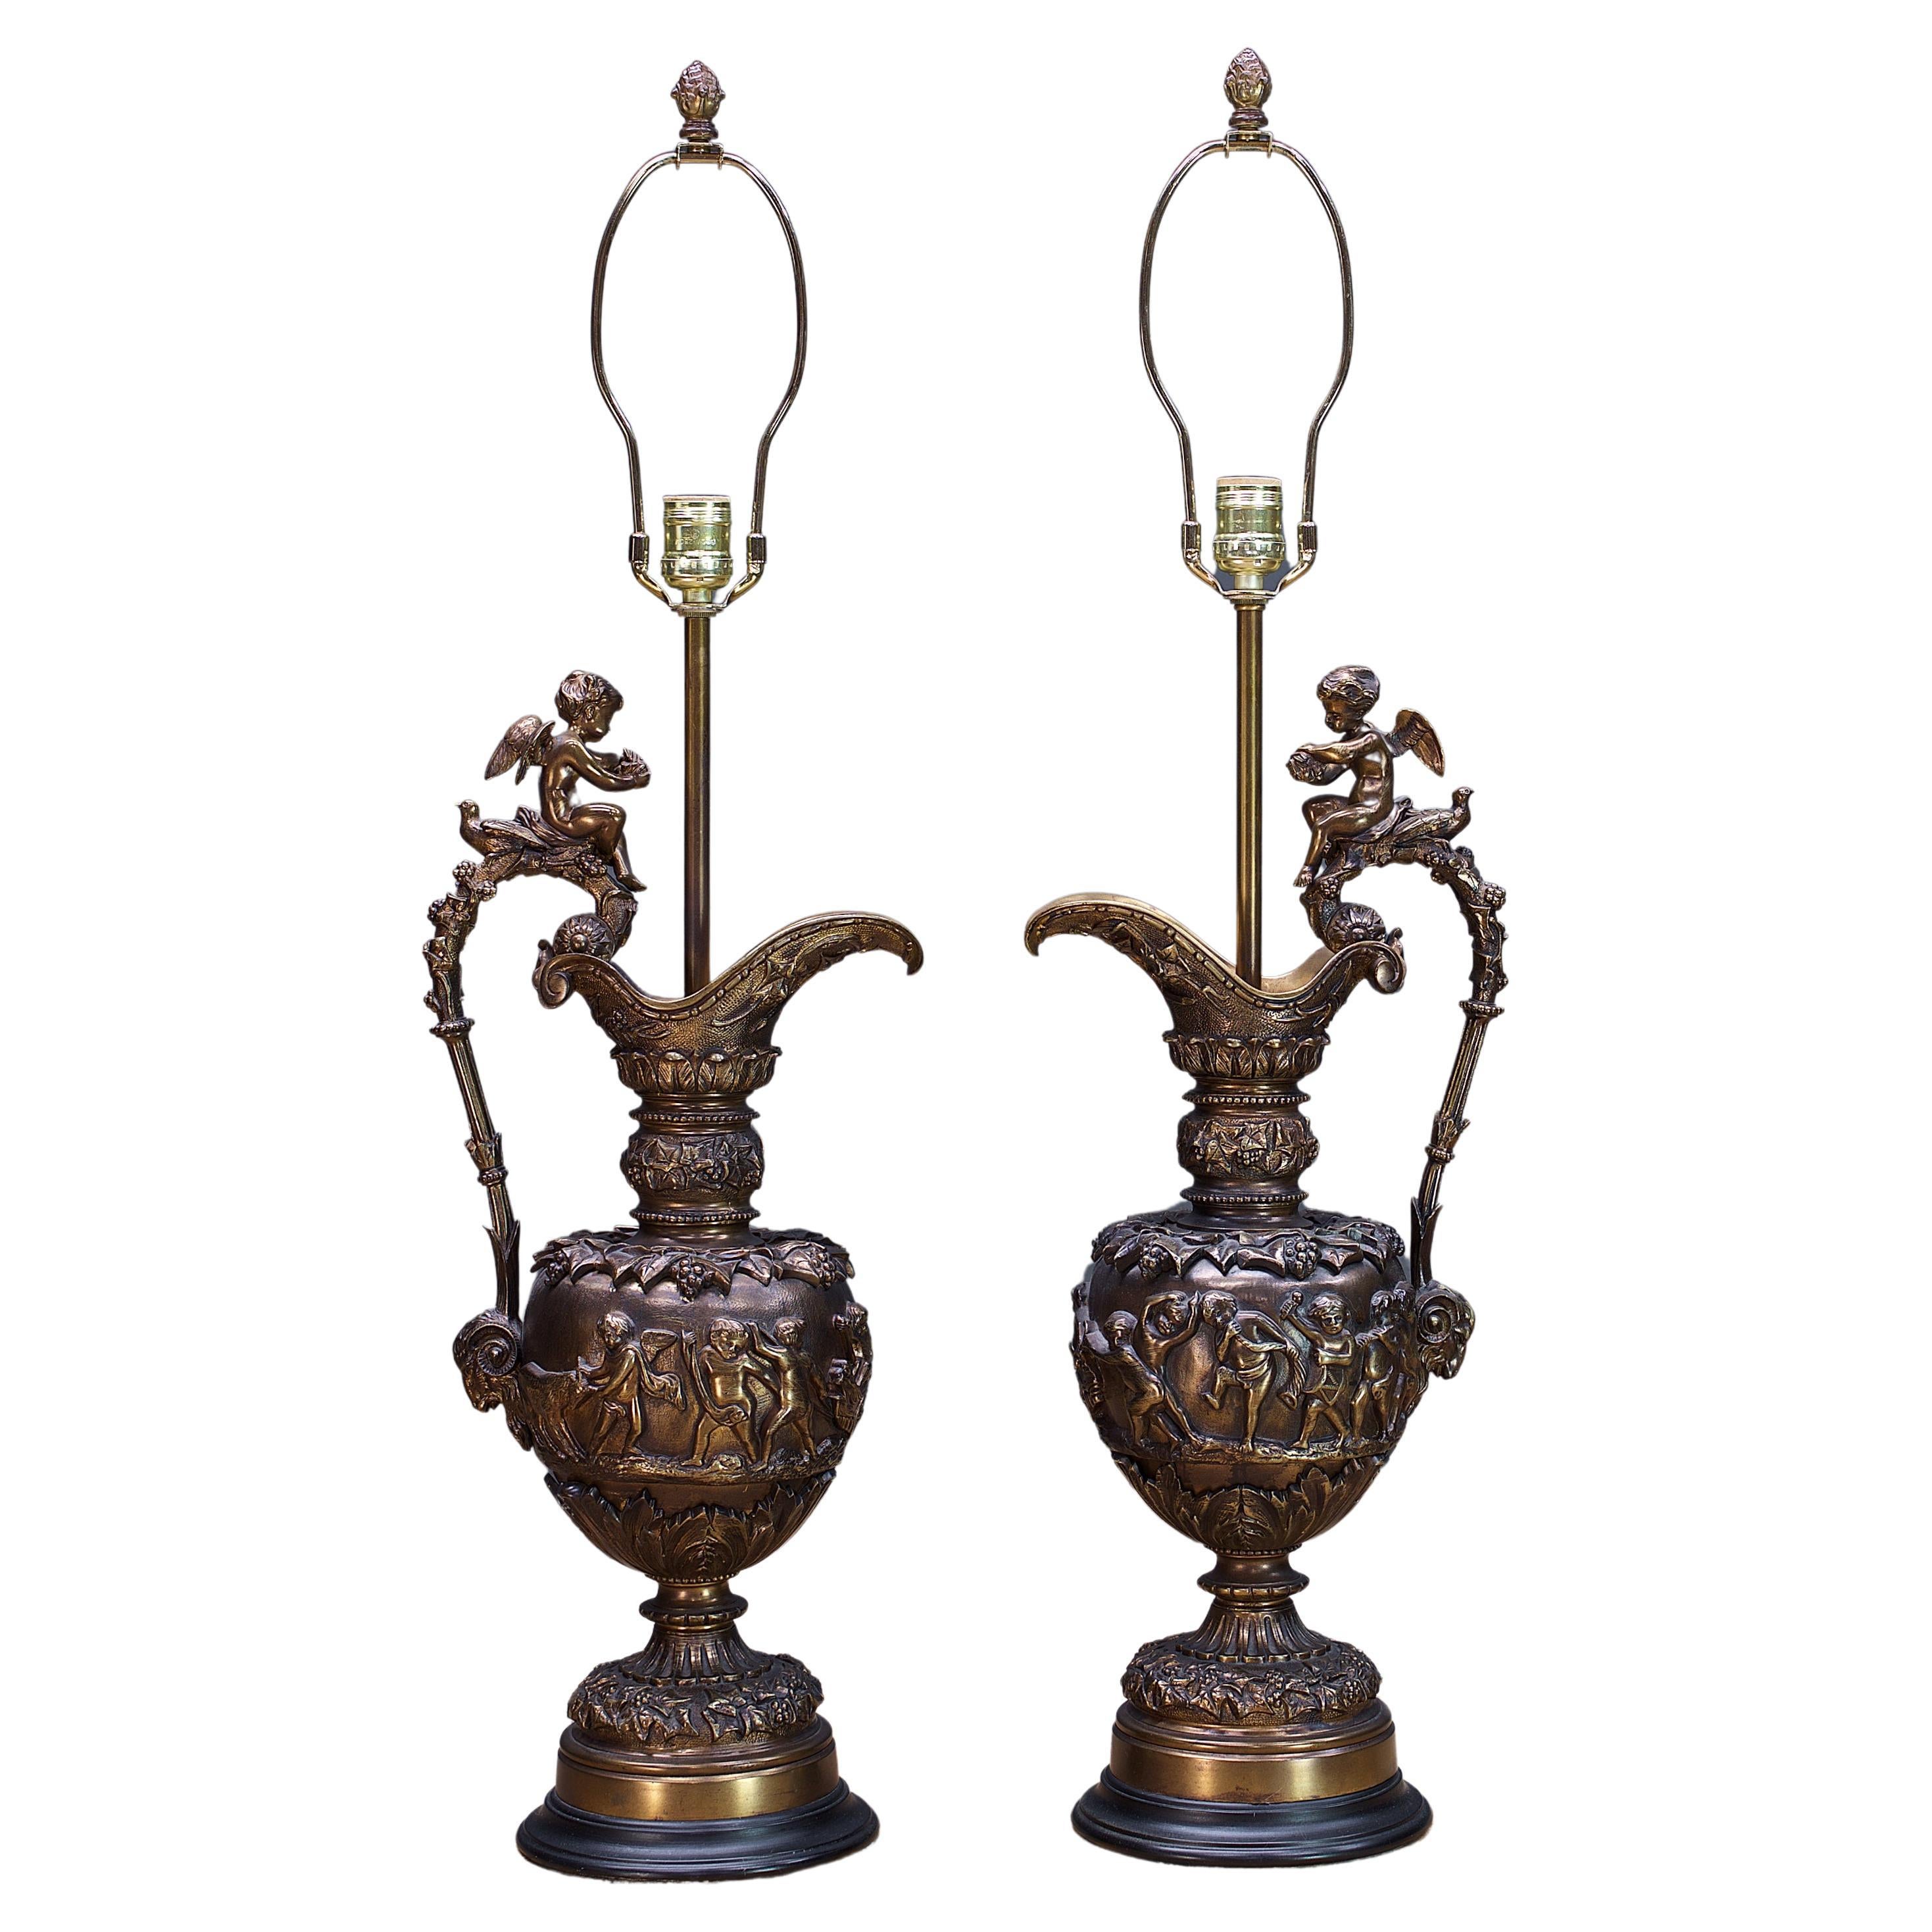  Anciennes lampes de table Bacchus en bronze - Luxury néoclassique Maximalist